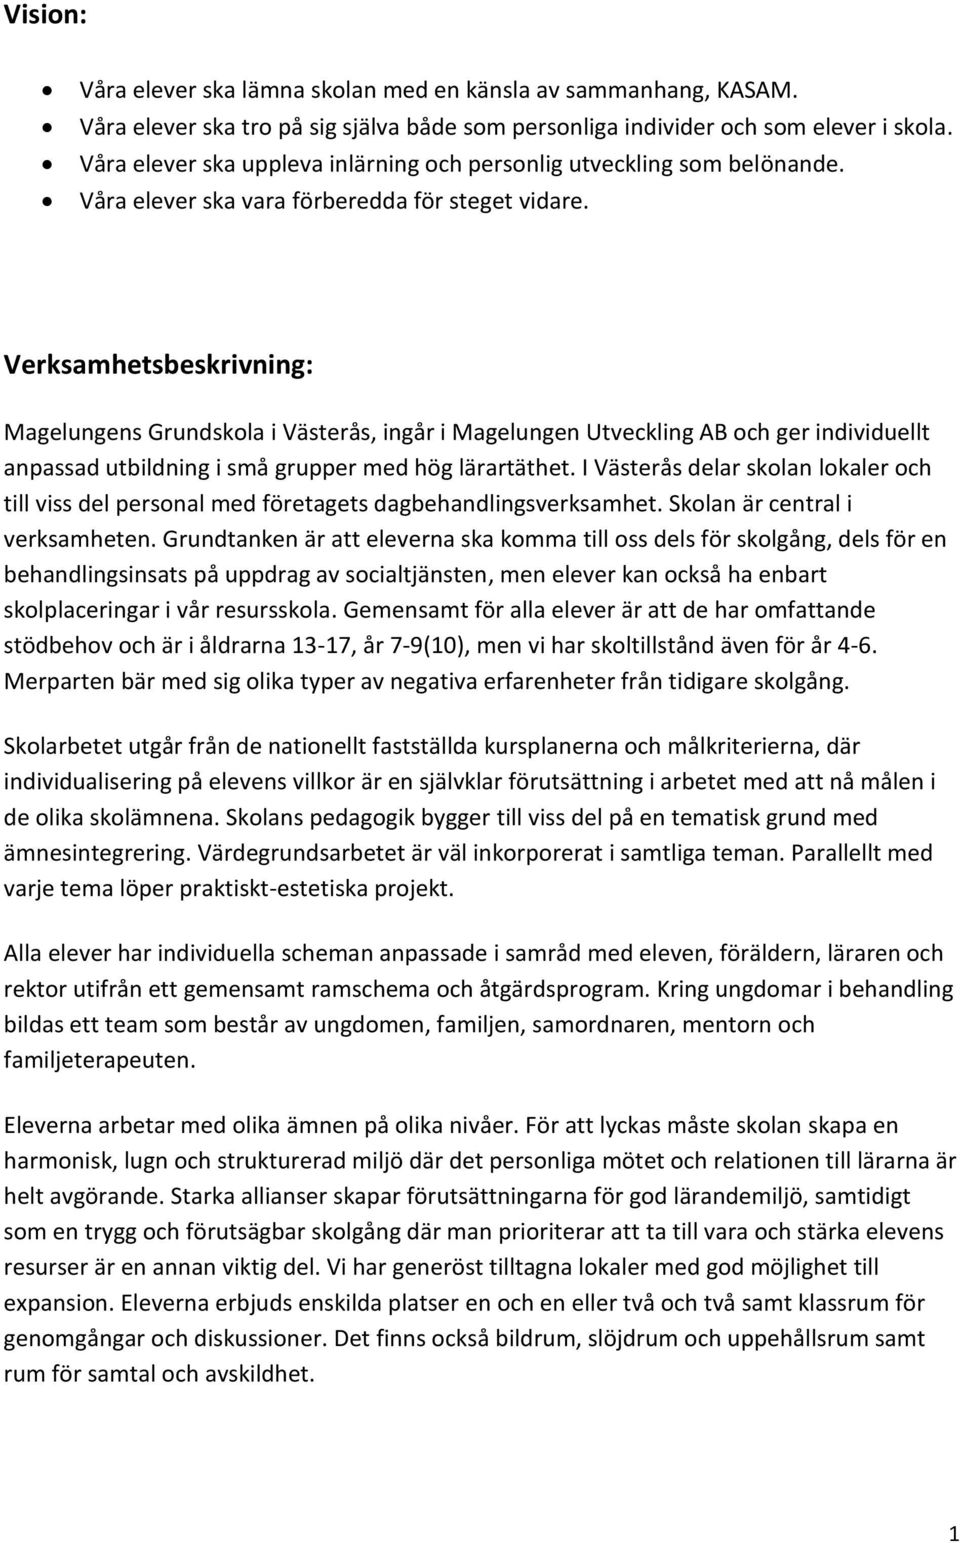 Verksamhetsbeskrivning: Magelungens Grundskola i Västerås, ingår i Magelungen Utveckling AB och ger individuellt anpassad utbildning i små grupper med hög lärartäthet.